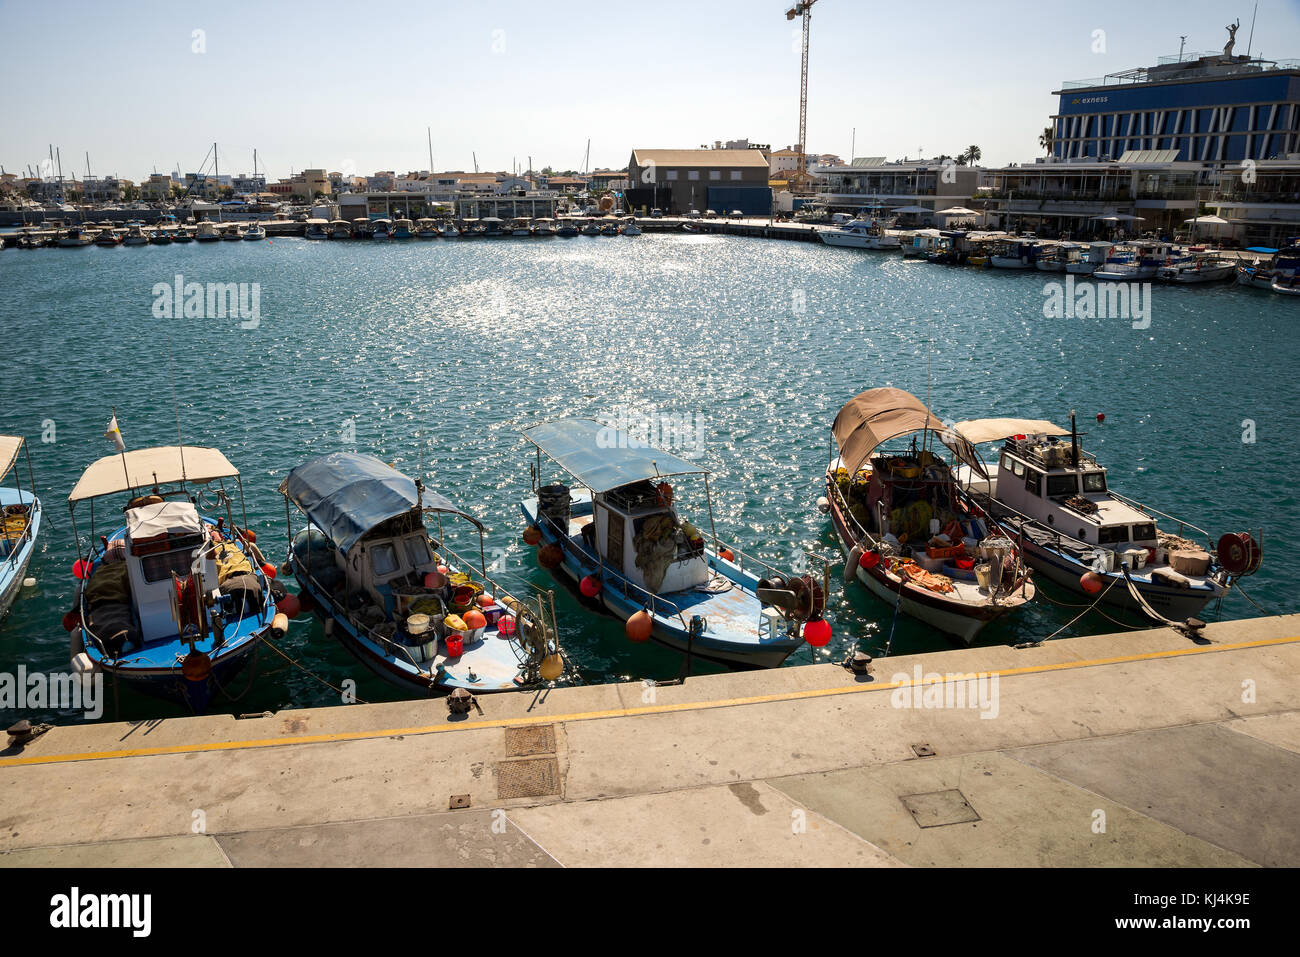 Vue sur le port de plaisance de Limassol avec de petits bateaux de pêche, partie sud de Chypre Banque D'Images